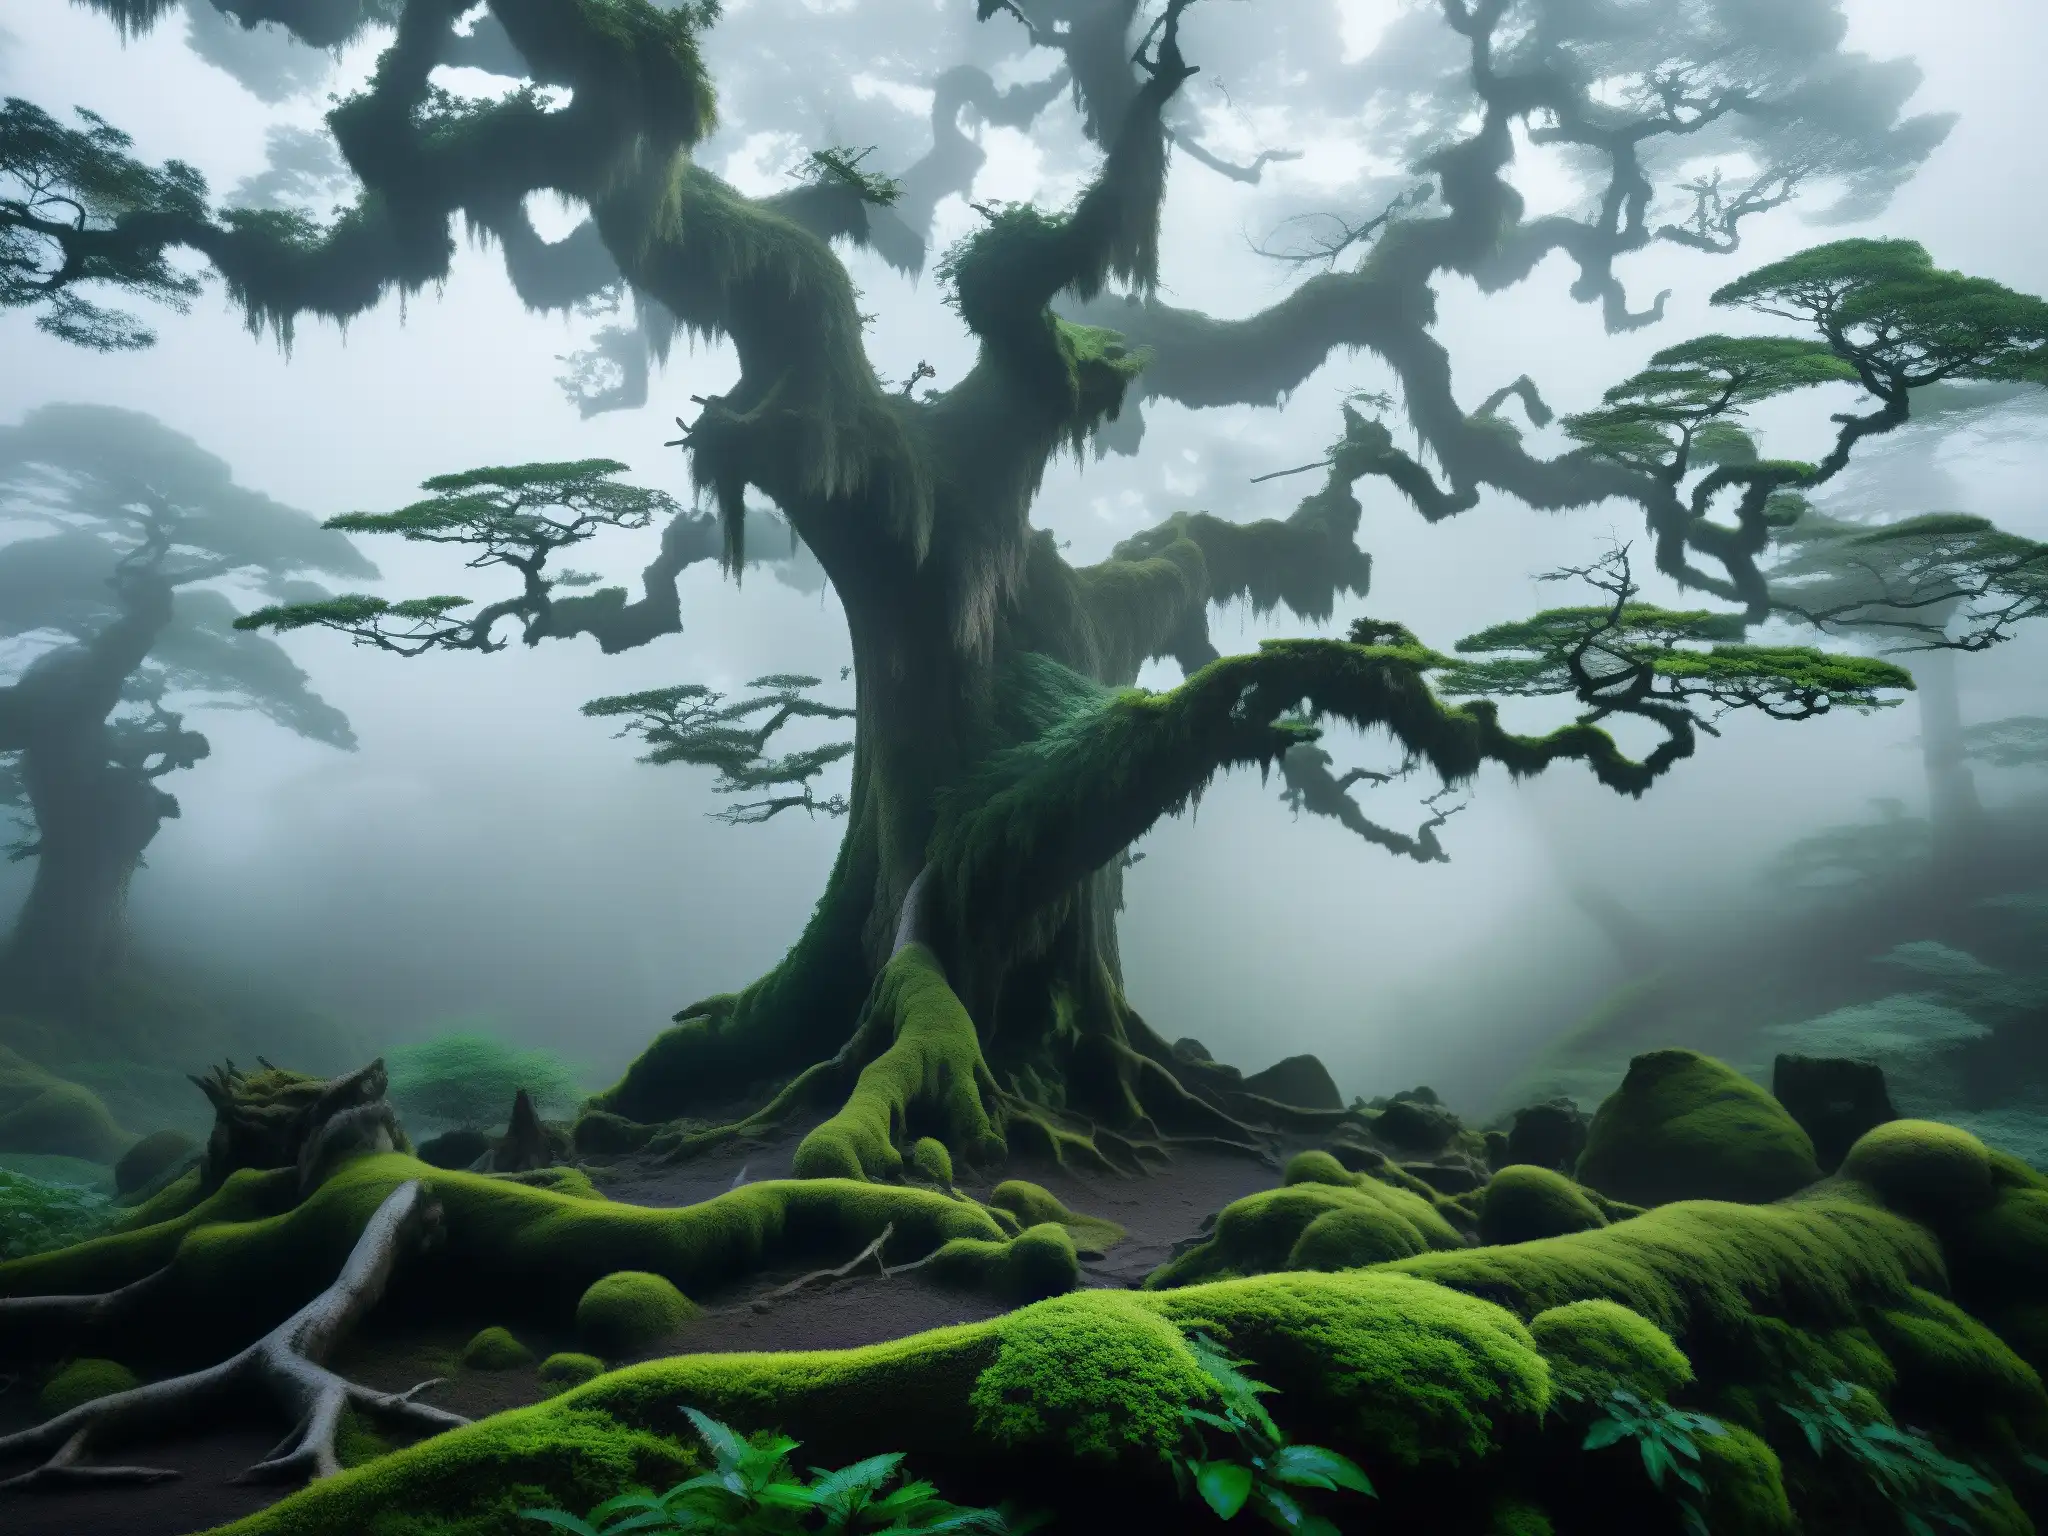 Majestuoso bosque japonés envuelto en niebla, revelando la atmósfera etérea de la leyenda japonesa del lamento eterno